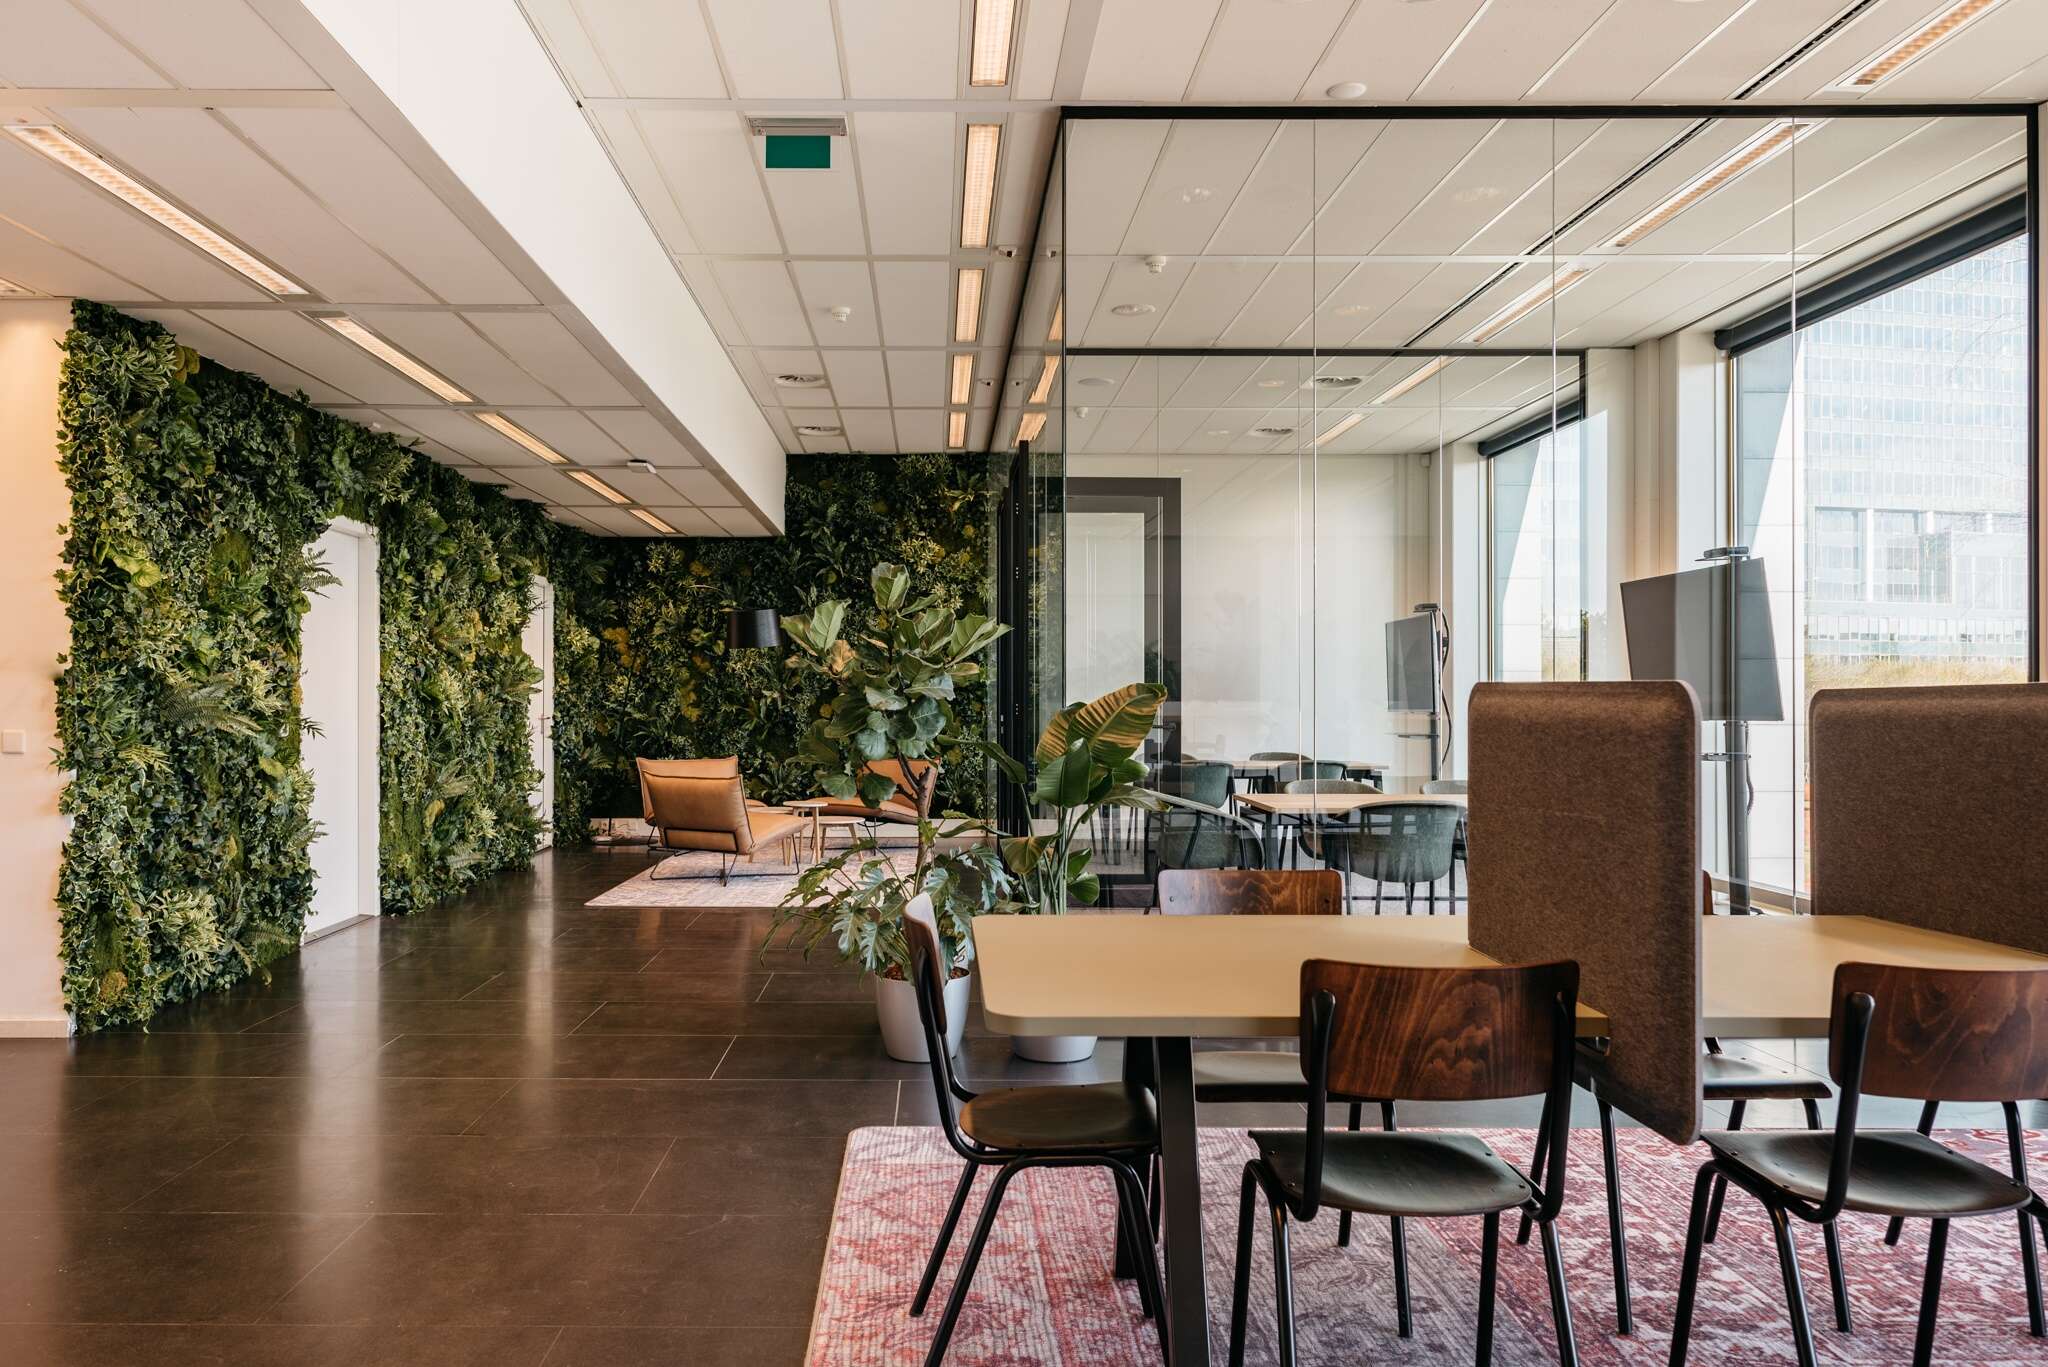 Área de recepción acogedora y accesible con instalaciones para reuniones y co-working en el edificio Trinity de Rotterdam, Países Bajos